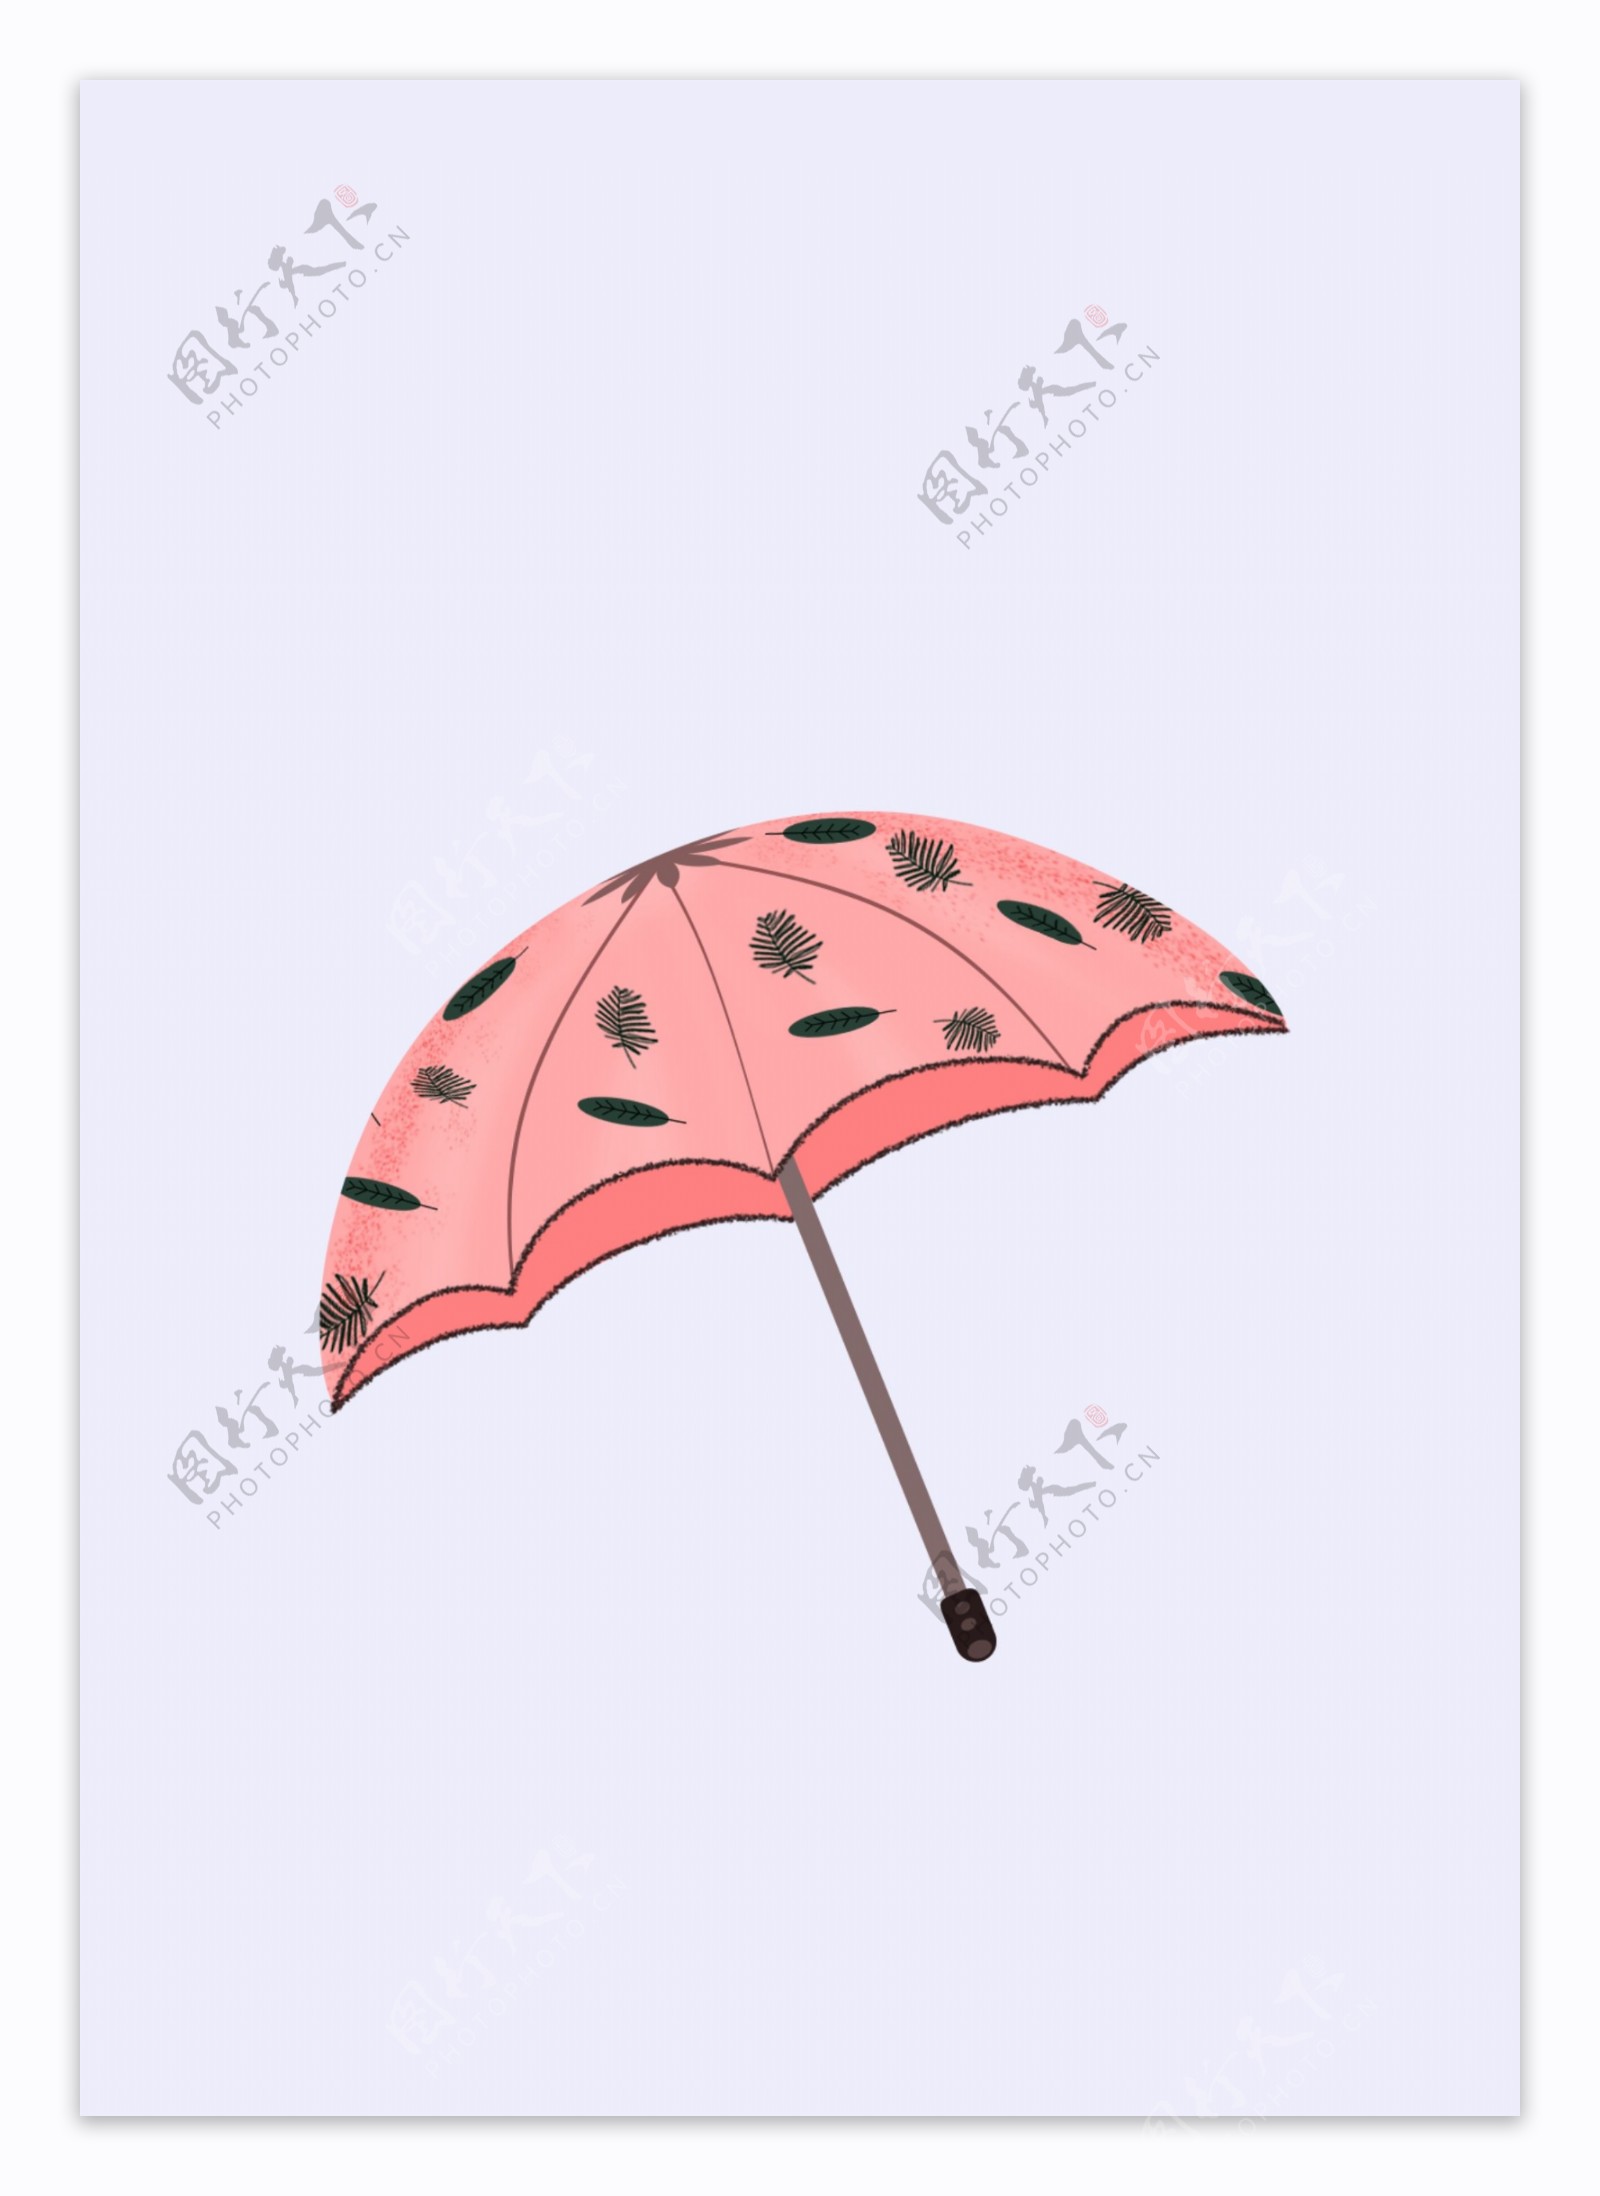 原创素材粉色森系雨伞